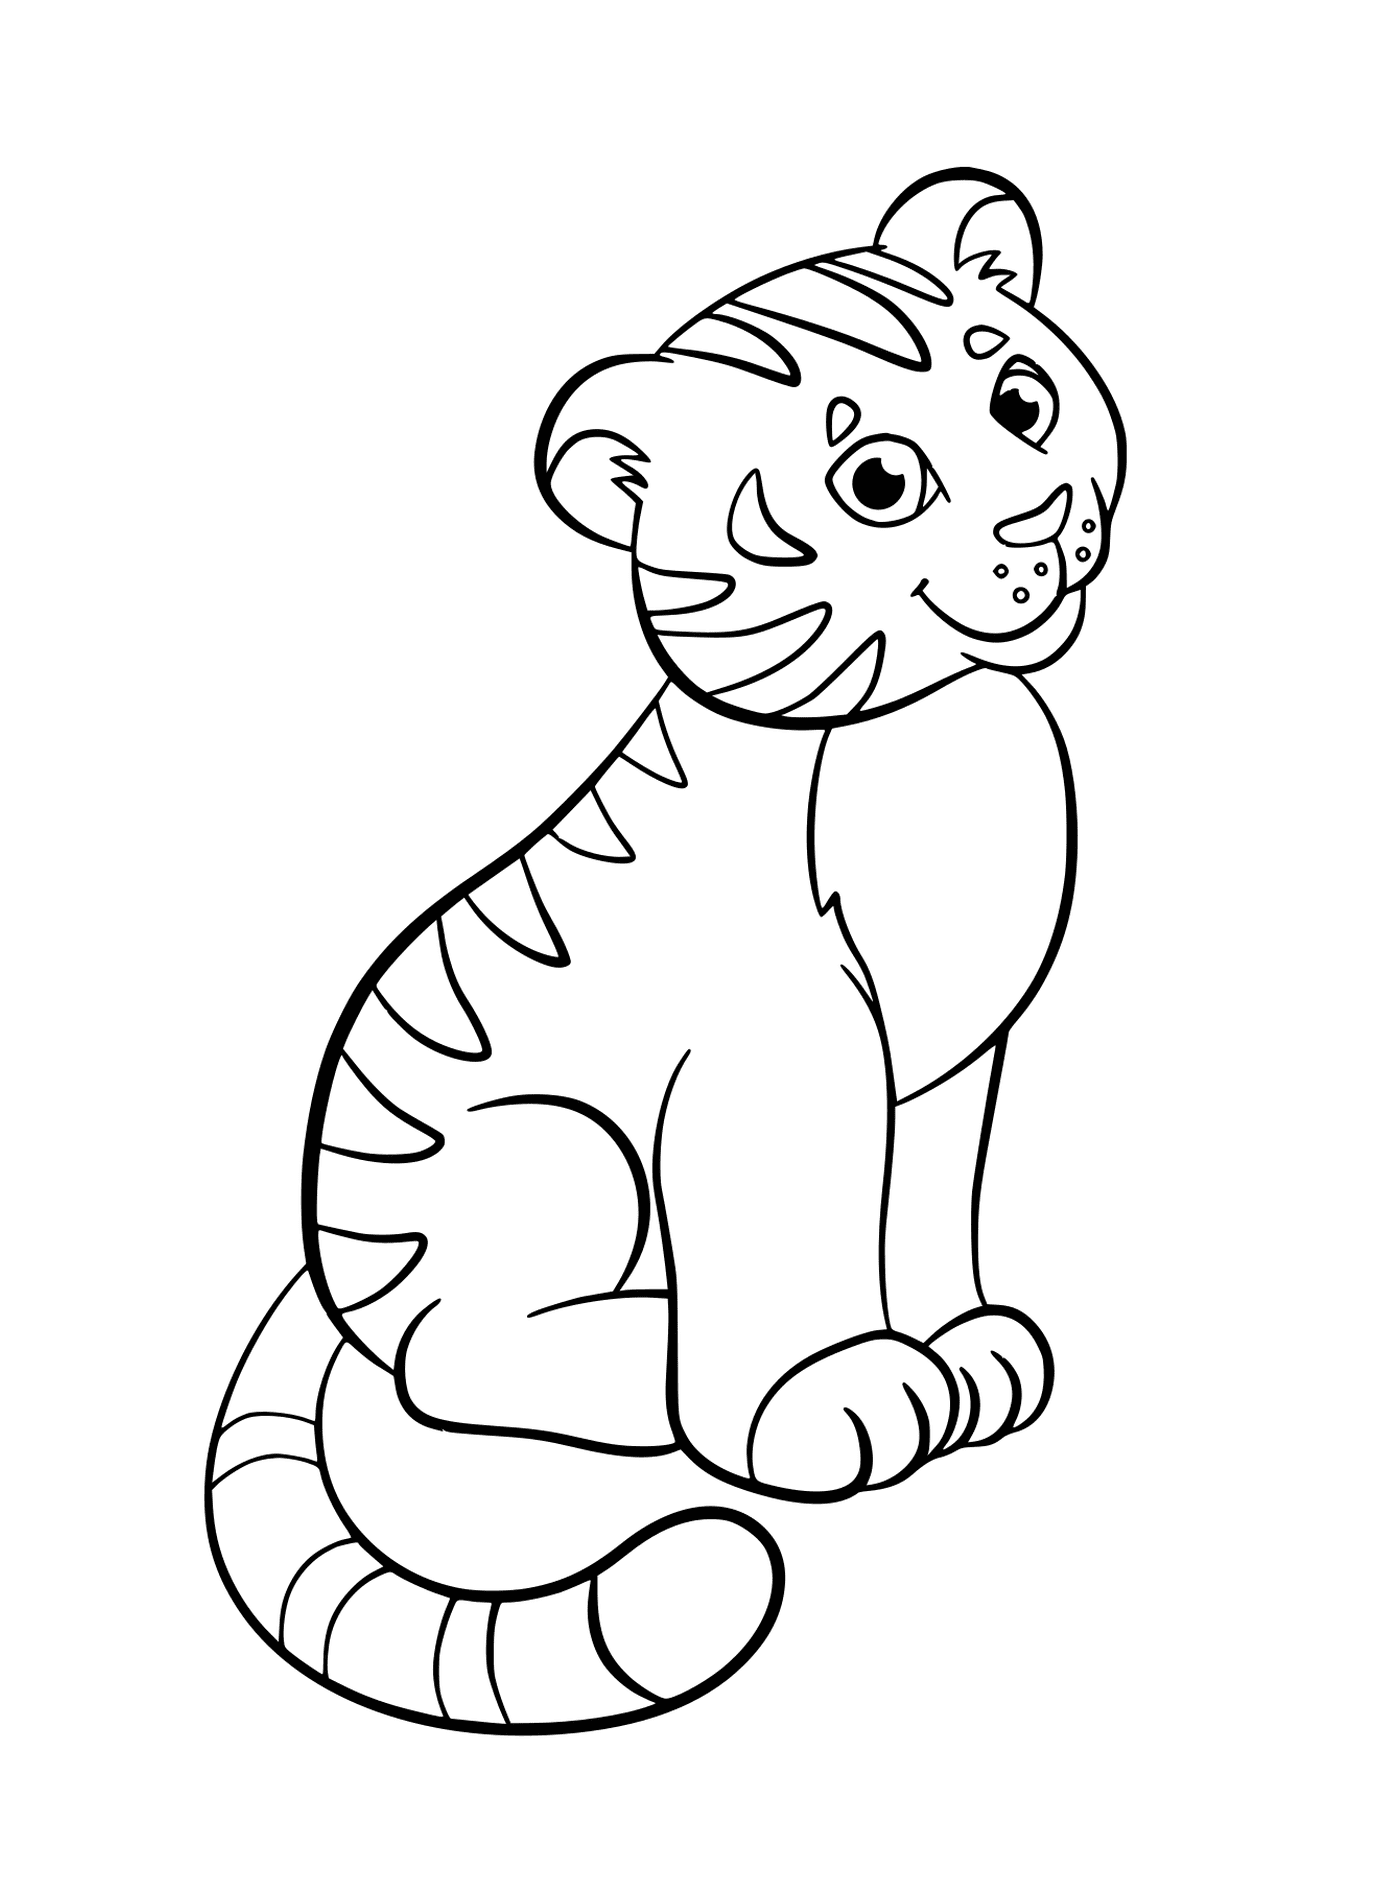  Una tigre seduta e sorridente 